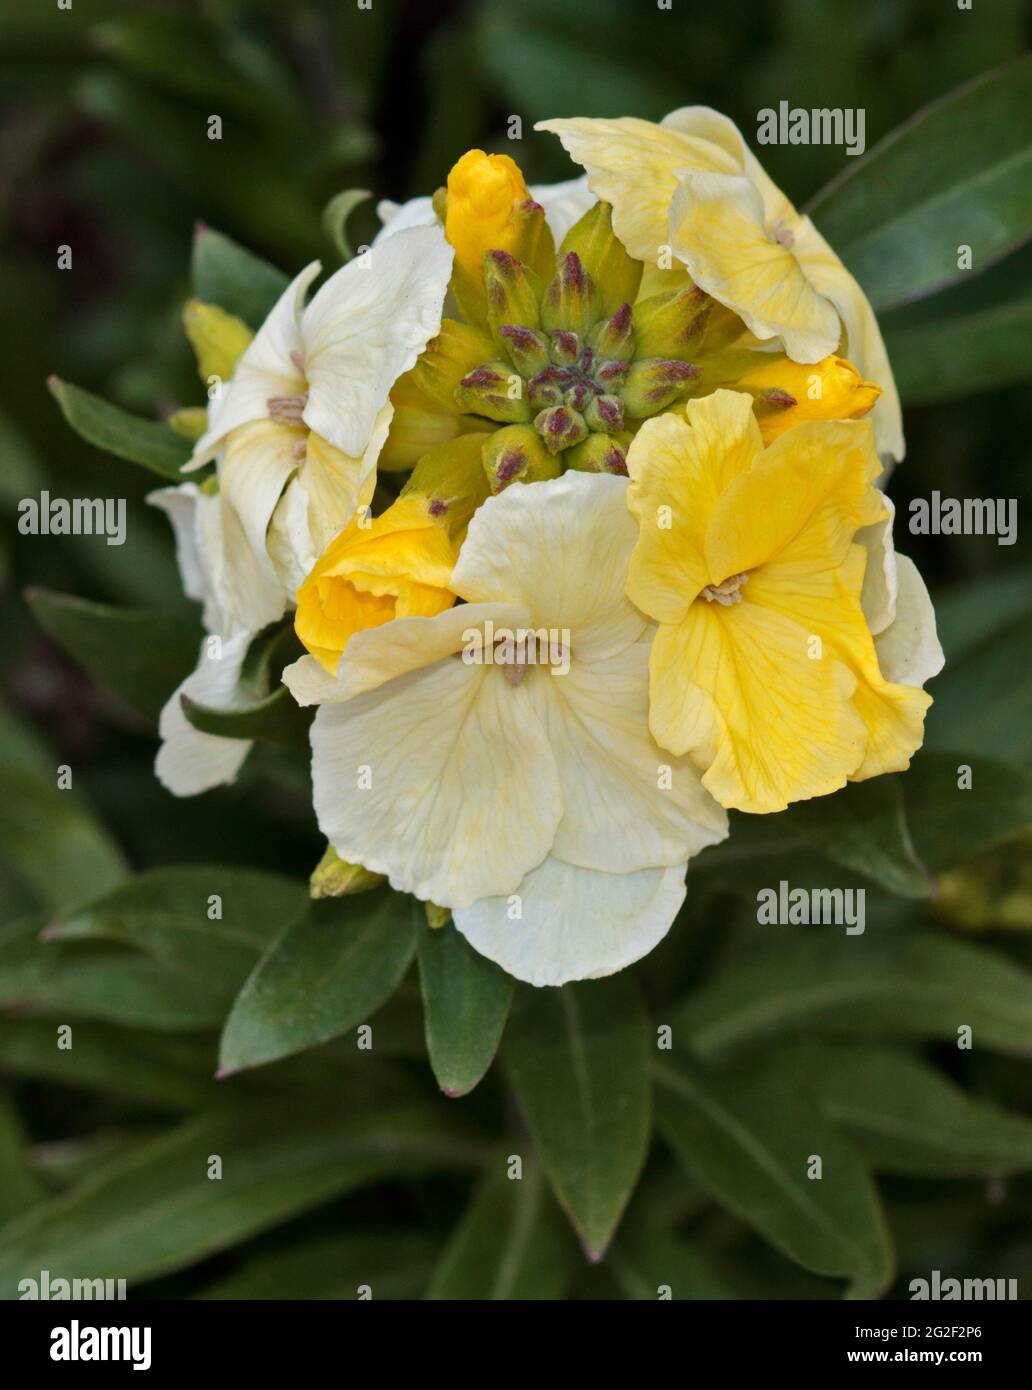 Yellow and White Wallflower Stock Photo